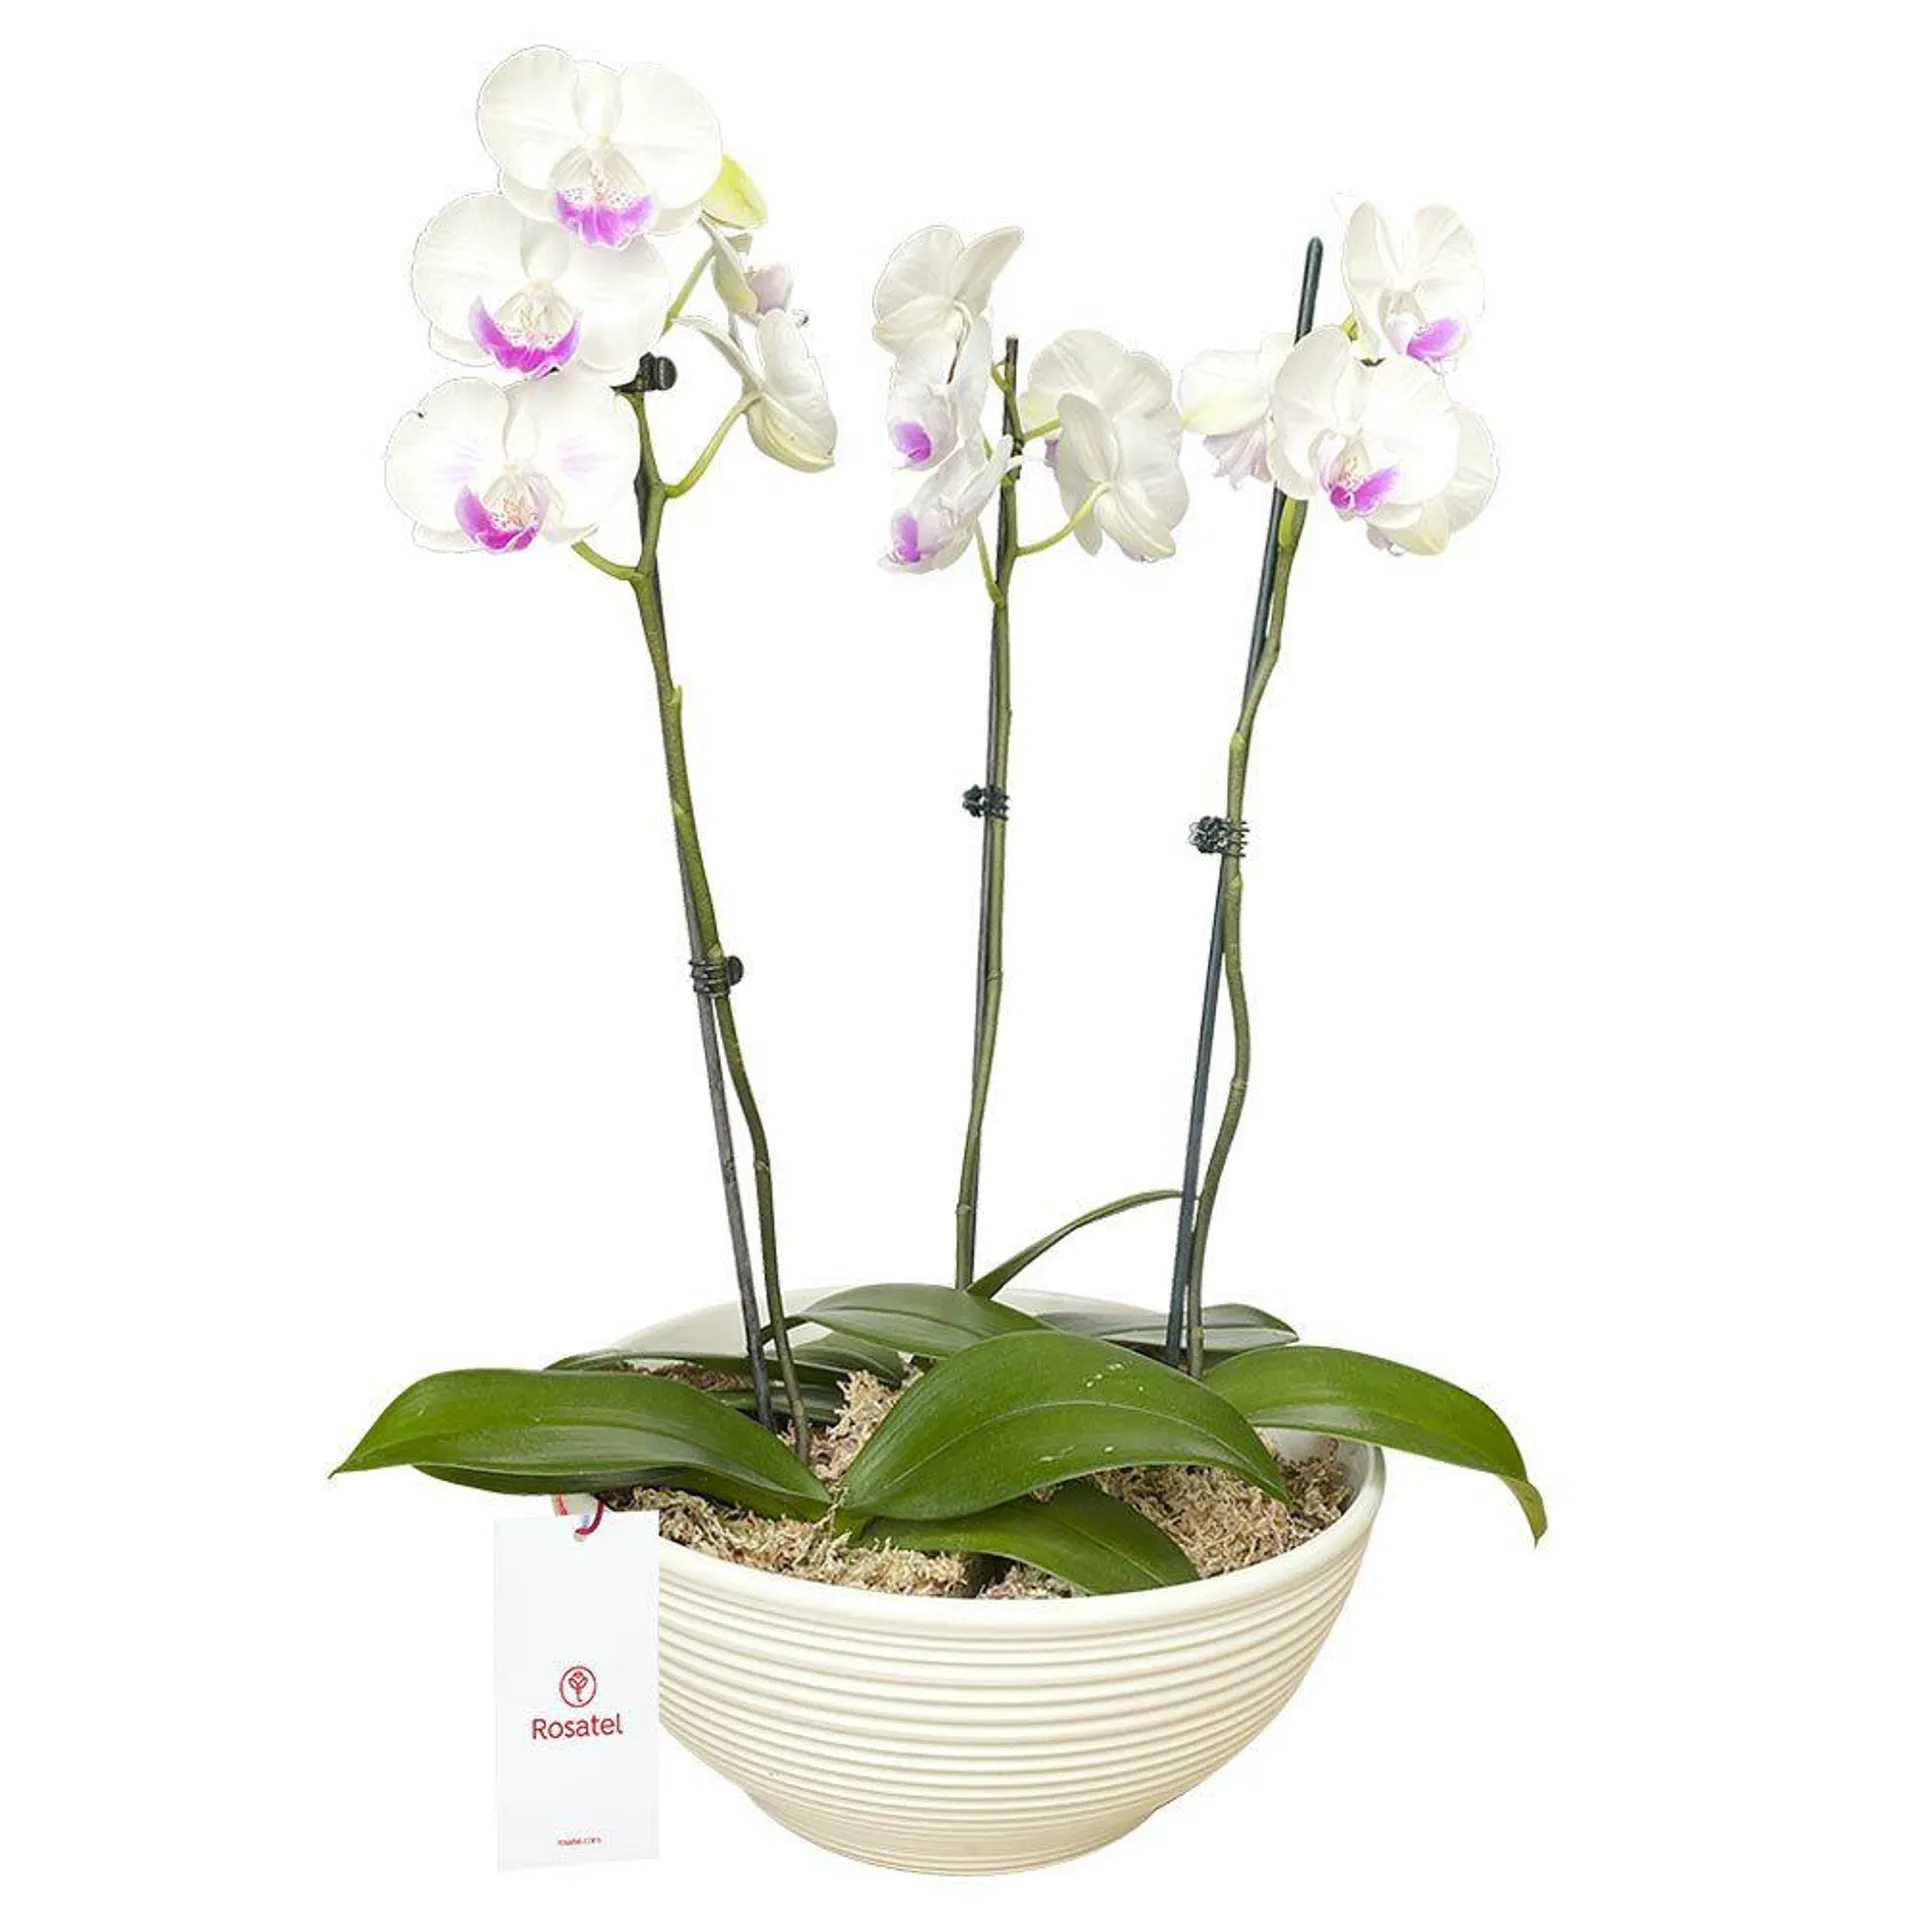 Planta Orquídea Phalaenopsis 3 Varas en Base Blanca